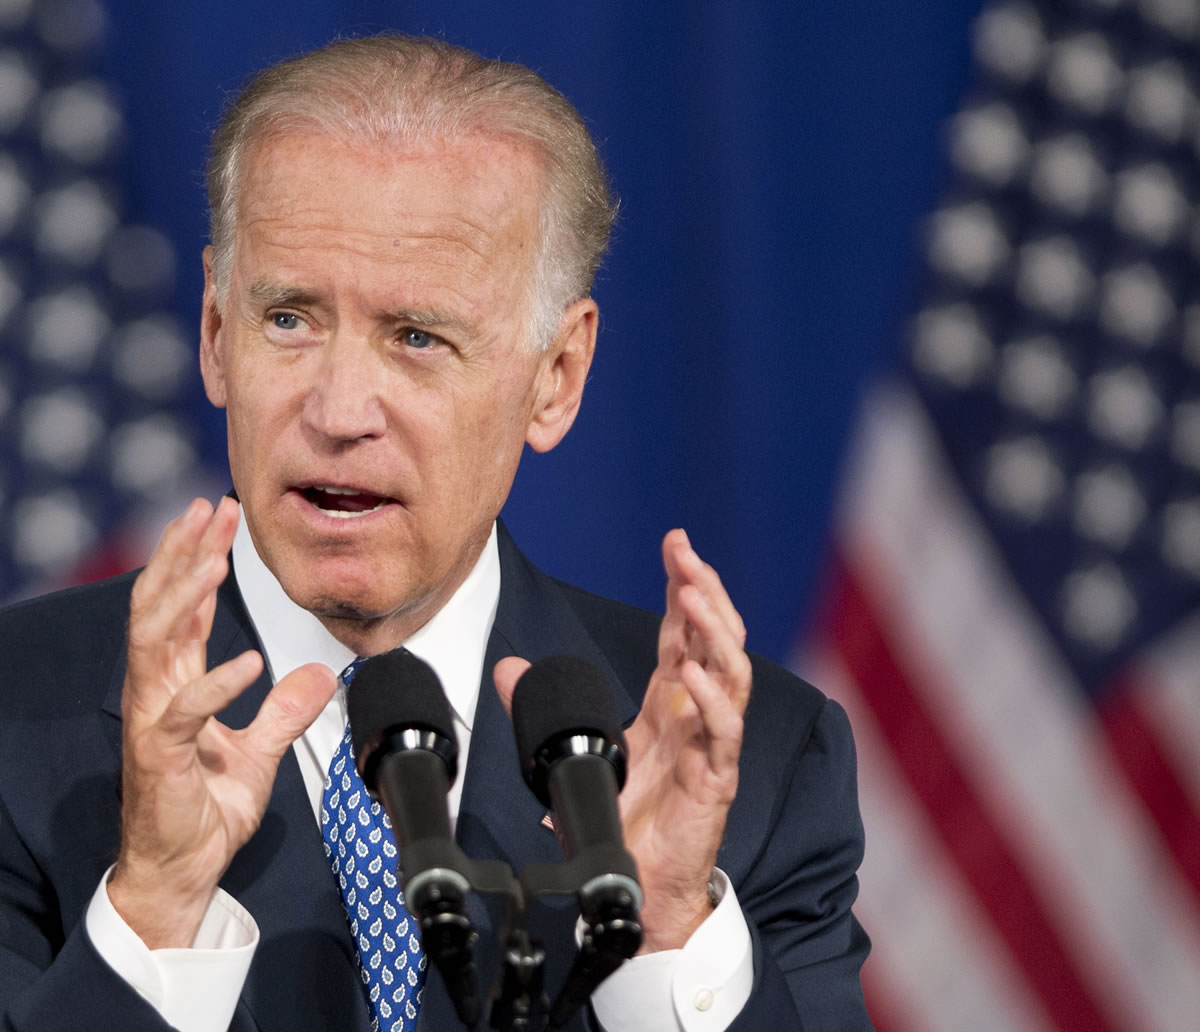 Vice President Joe Biden speaks in Washington earlier this year.